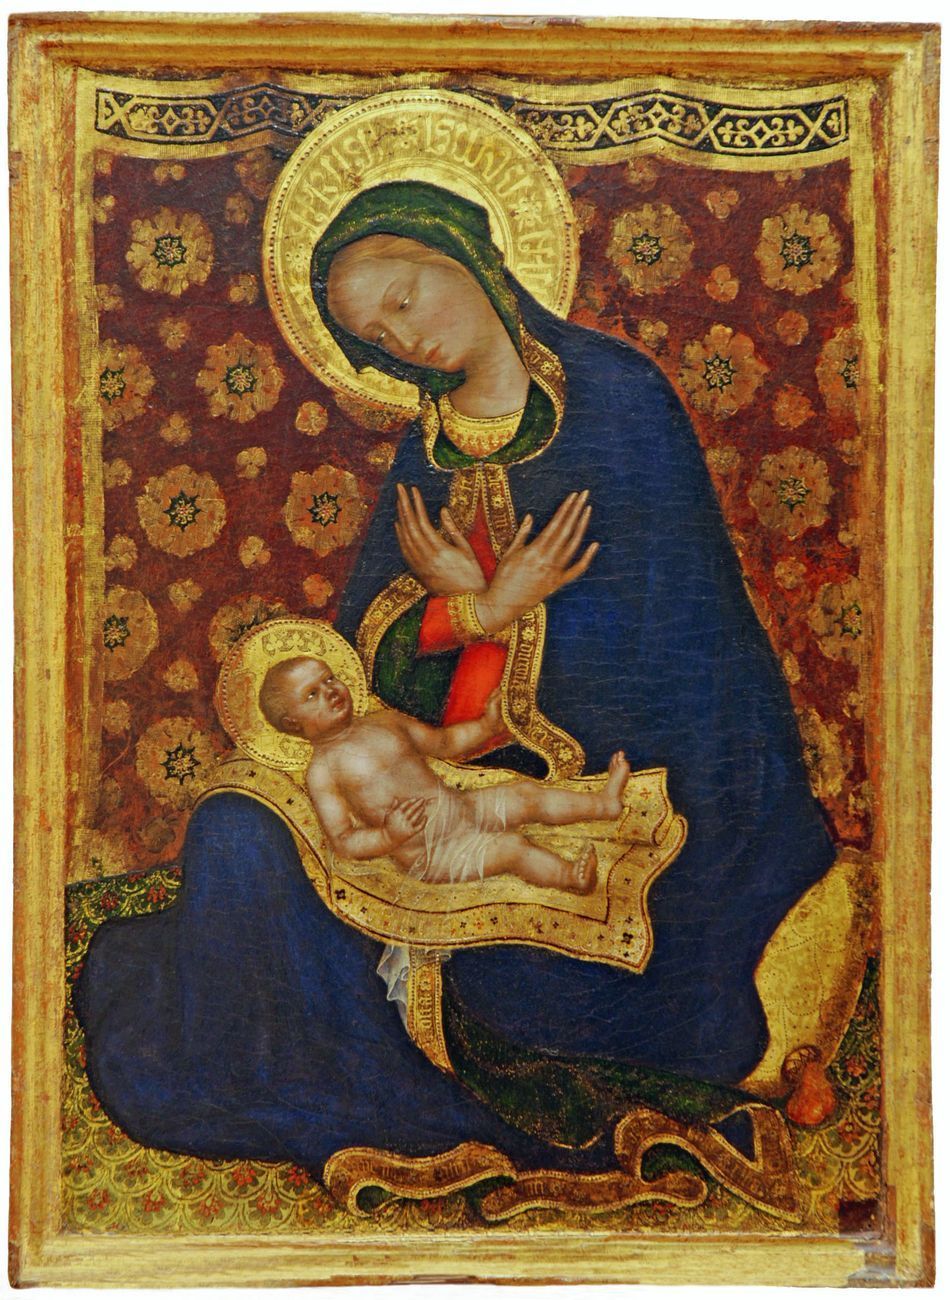 Gentile da Fabriano, Madonna dell'Umiltà, 1415-16